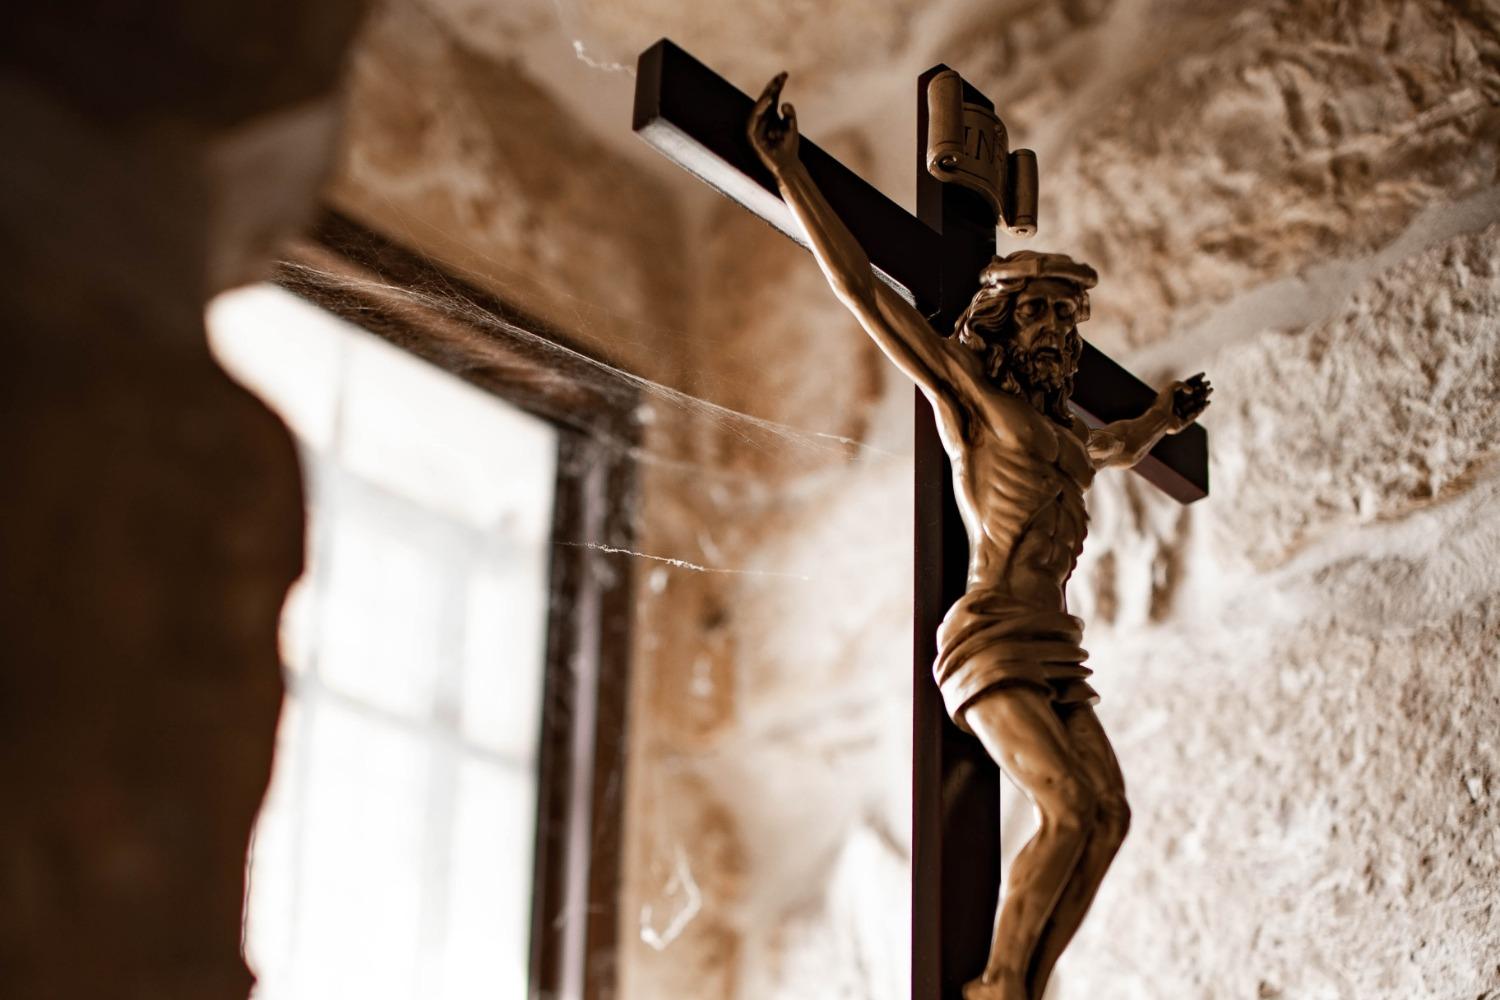 A crucifix in a window